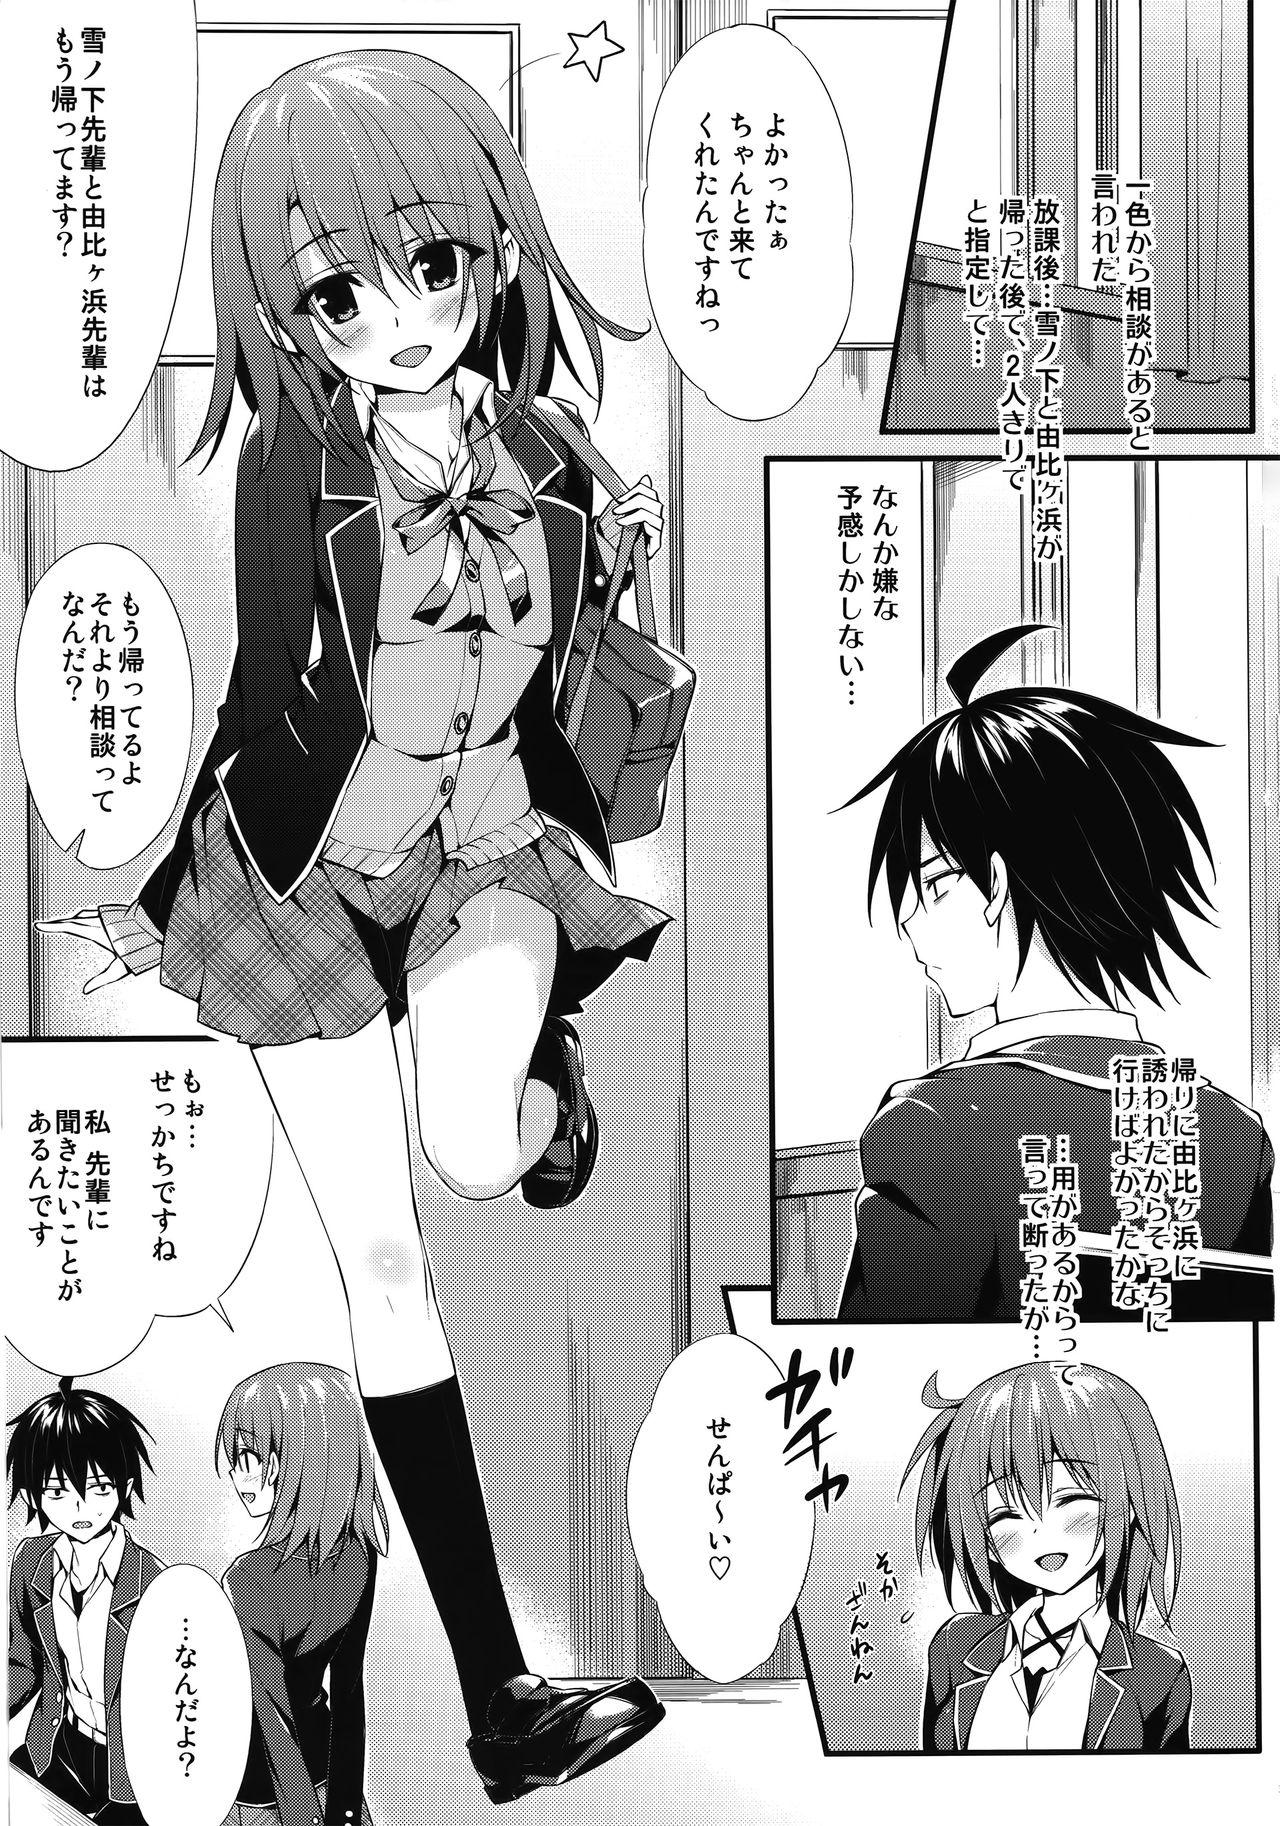 Milf Porn Irohasu Gentei - Yahari ore no seishun love come wa machigatteiru Vibrator - Page 2